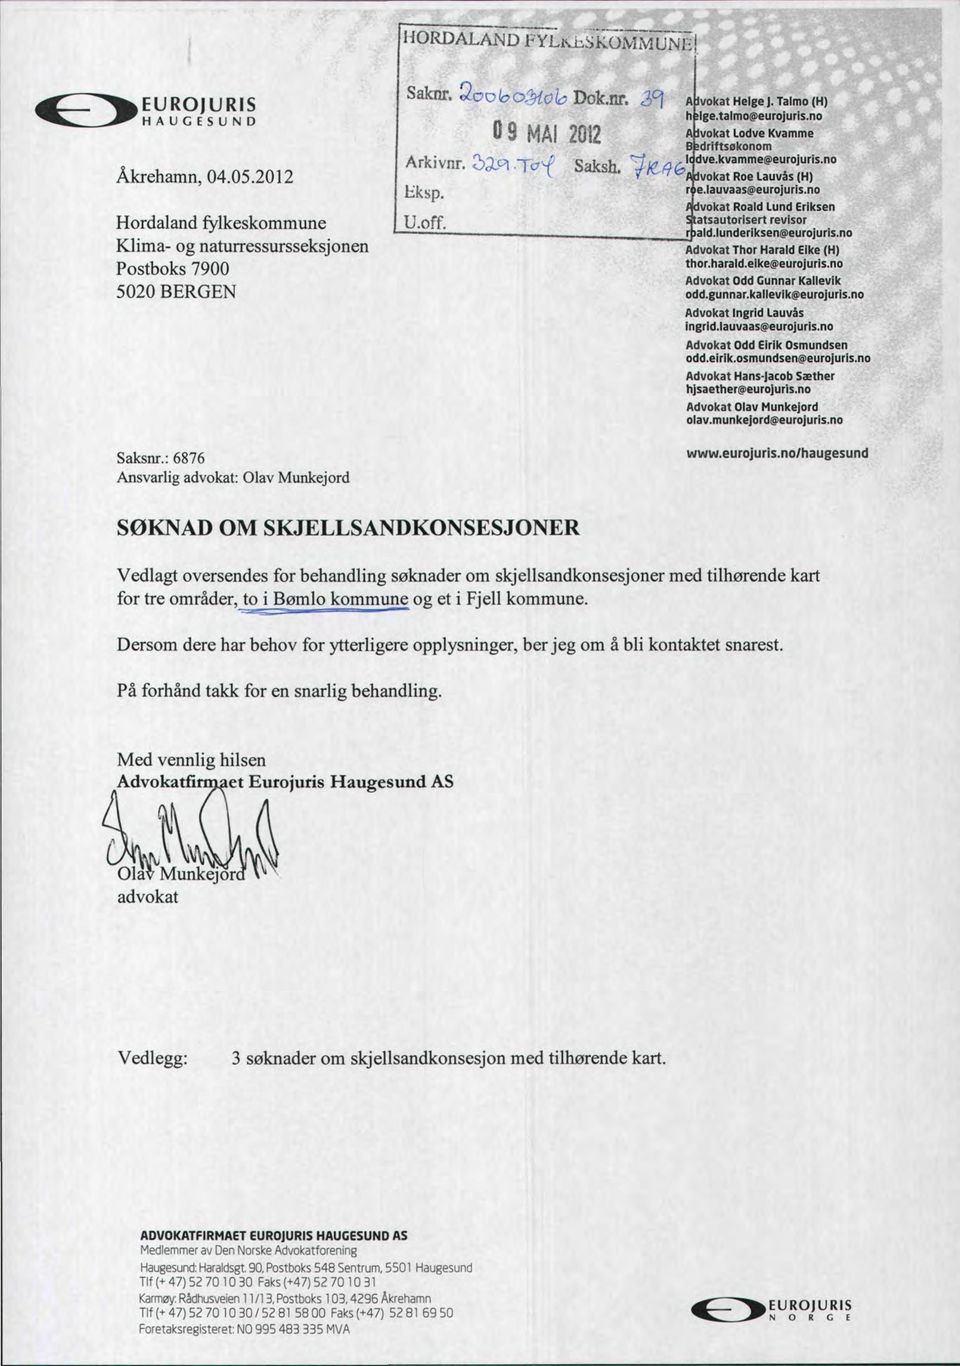 no Apvokat Lodve Kvamme BJedriftsQkonom Saksh. ^/(.^^"Ilv^-kvamme^eurojuris.no vokat Roe Lauvås (H) r^e.lauvaasiseurojurls.no vokat Roald Lund Eriksen atsautorlsert revisor rbald.